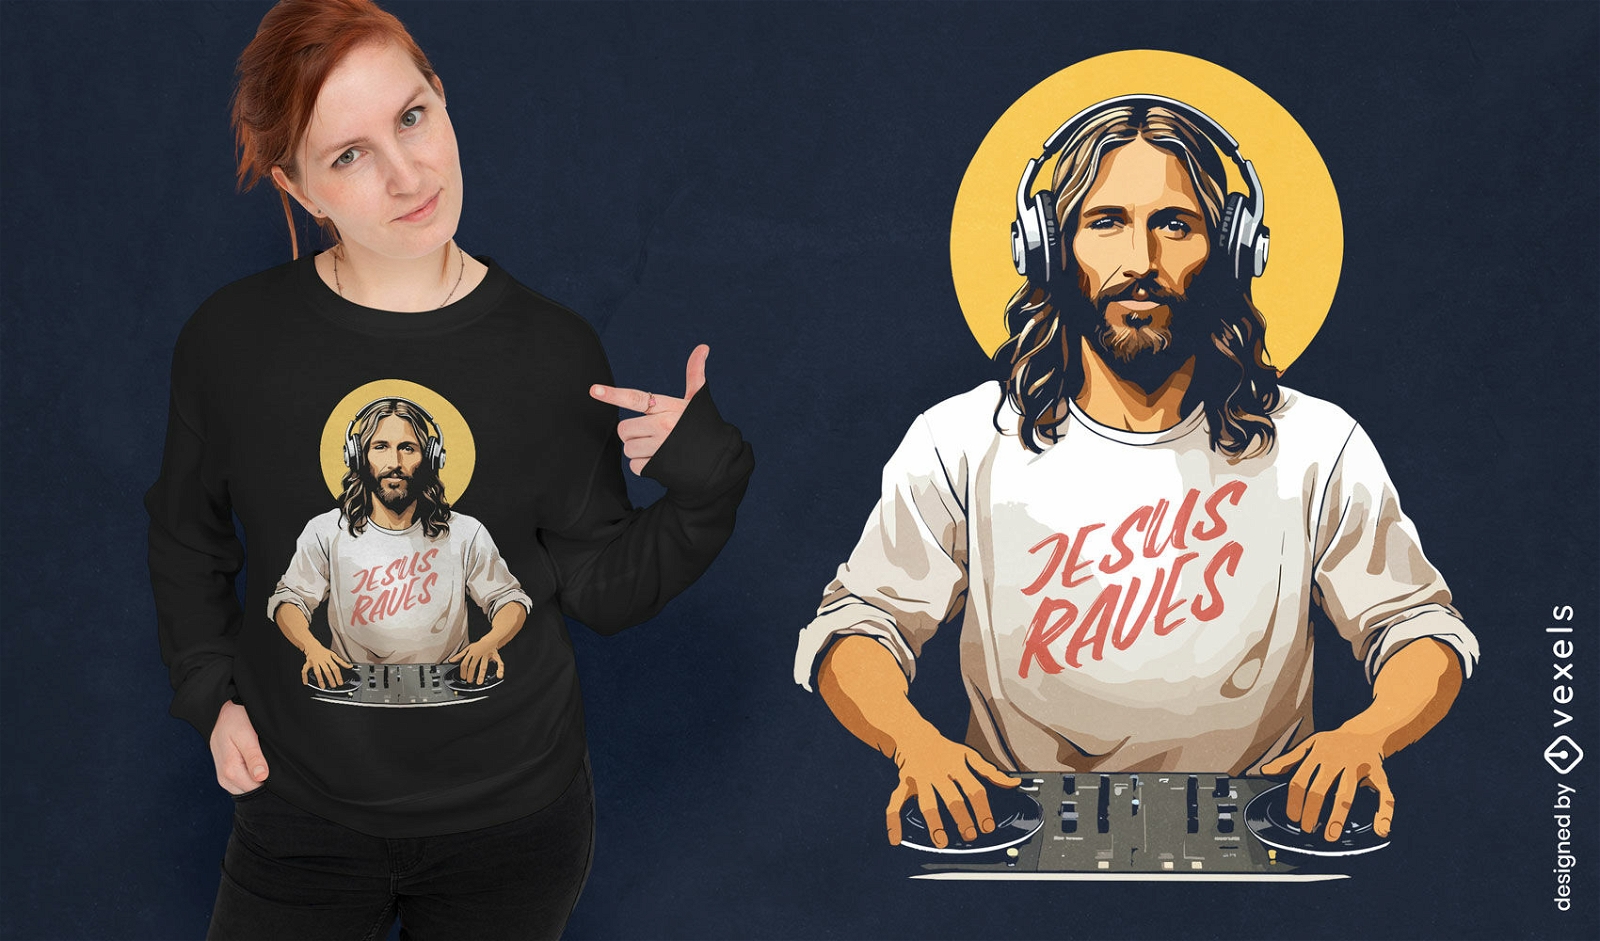 Dise?o de camiseta DJ Jesus delira